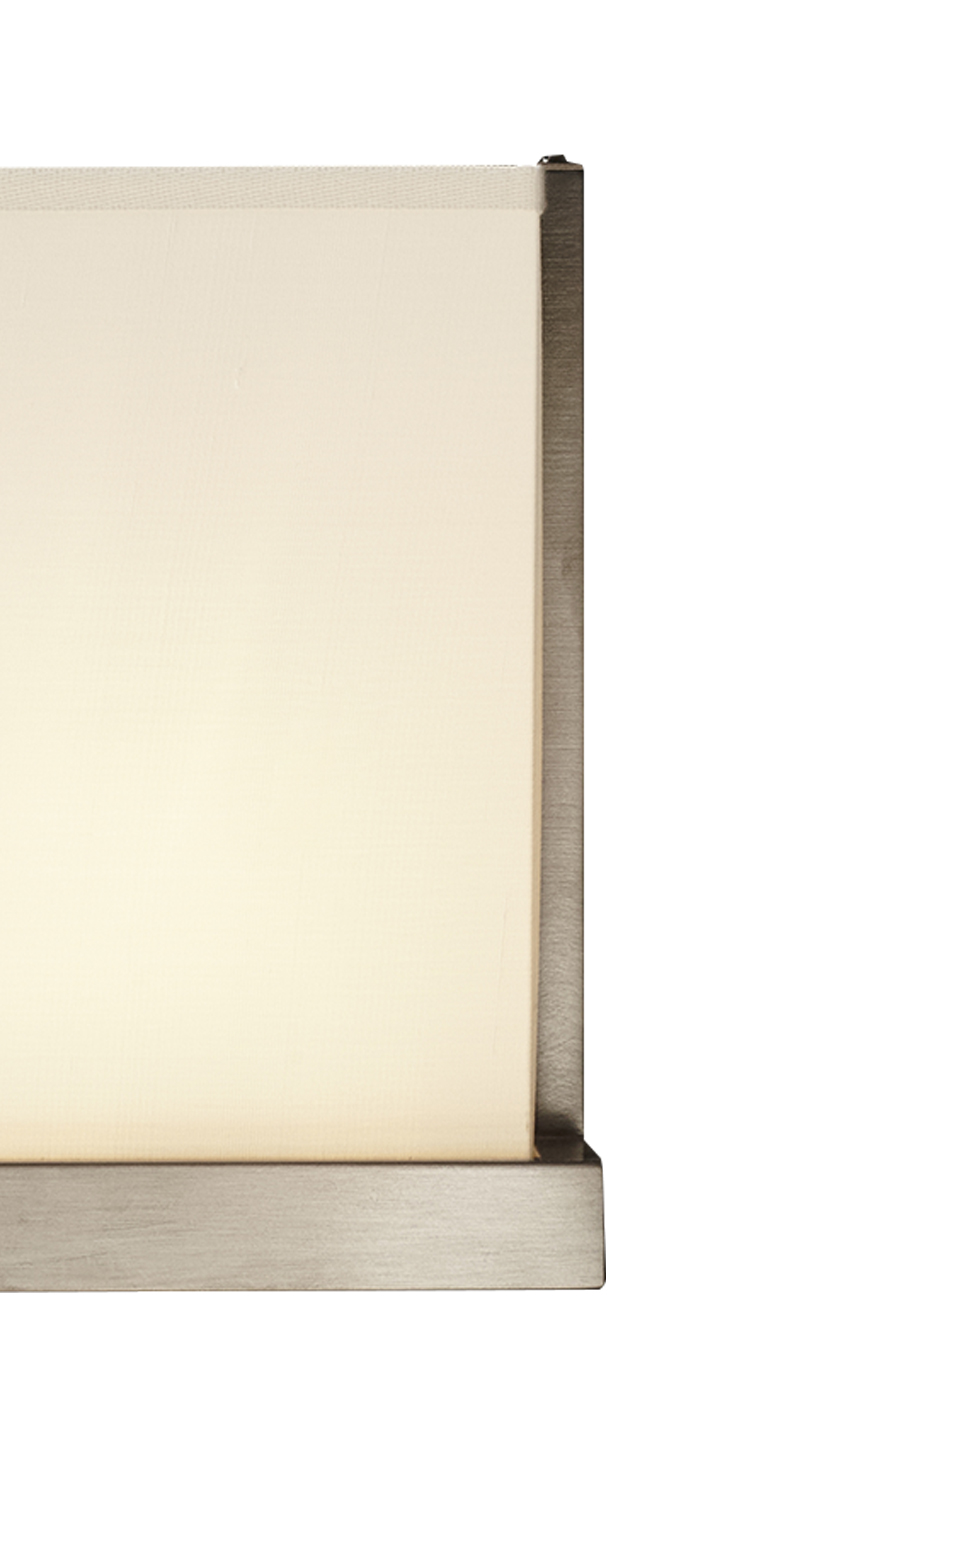 Détail de Colette, applique murale LED en bronze, nickel ou chrome, avec un abat-jour en lin, coton ou soie avec bordure cousue main. Ce luminaire figure dans le catalogue Promemoria | Promemoria